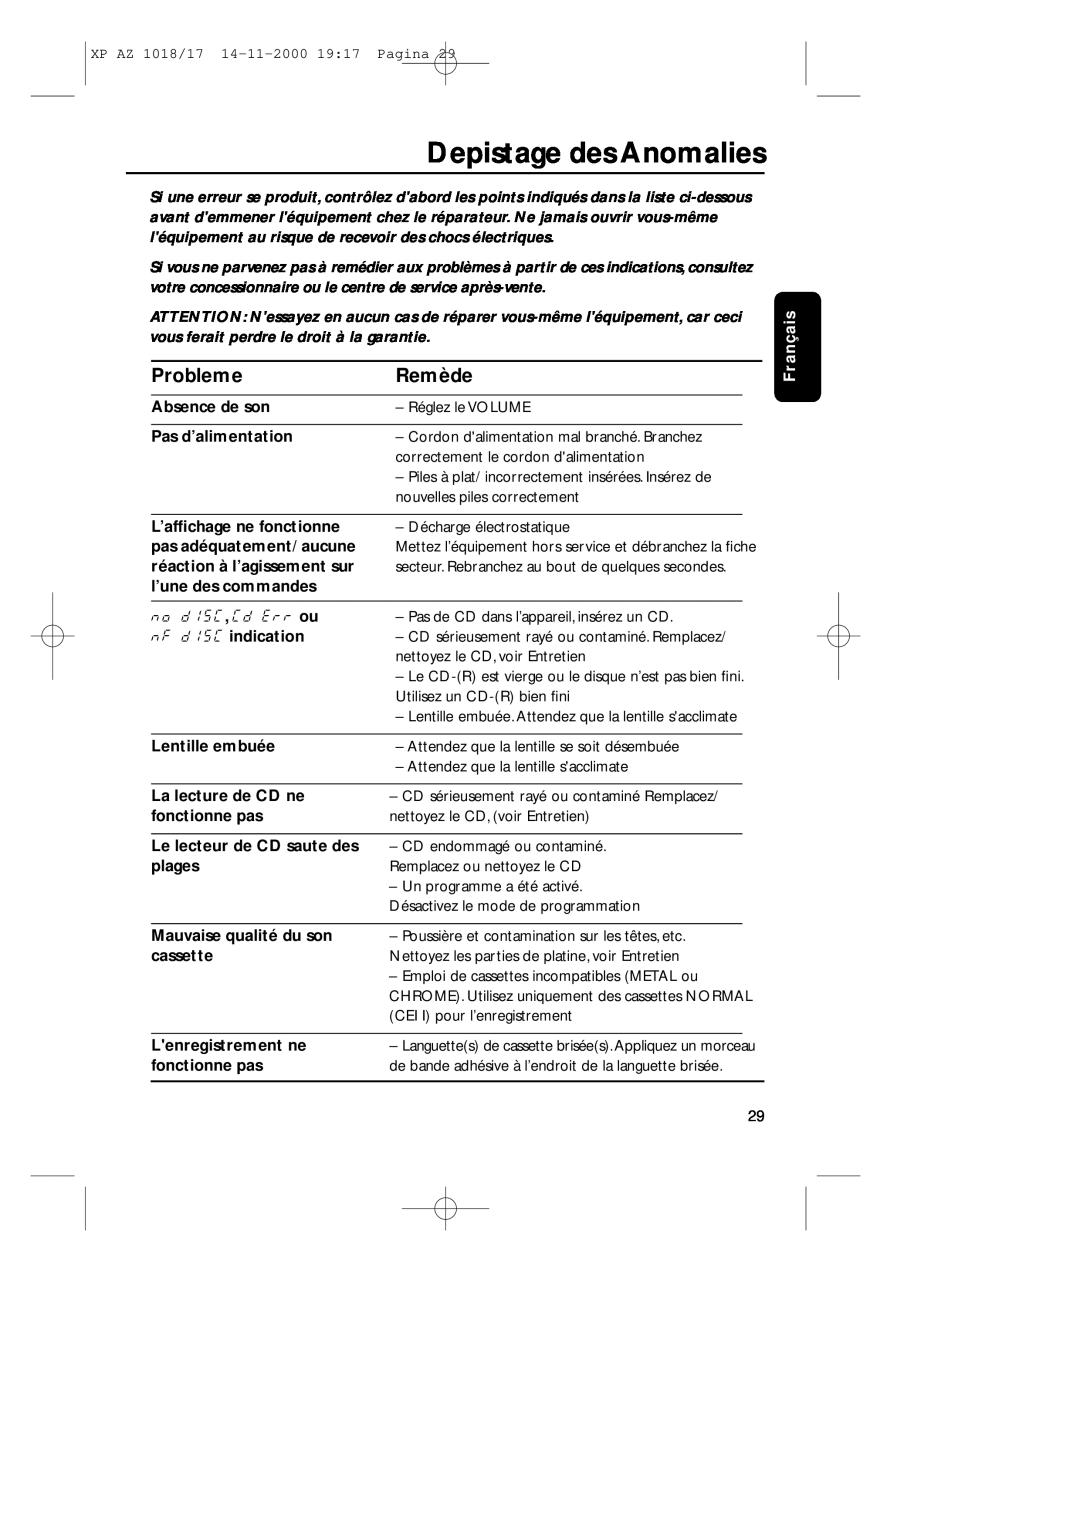 Philips 1018 manual Depistage des Anomalies, Probleme, Remède, Absence de son, Pas d’alimentation, L’afﬁchage ne fonctionne 